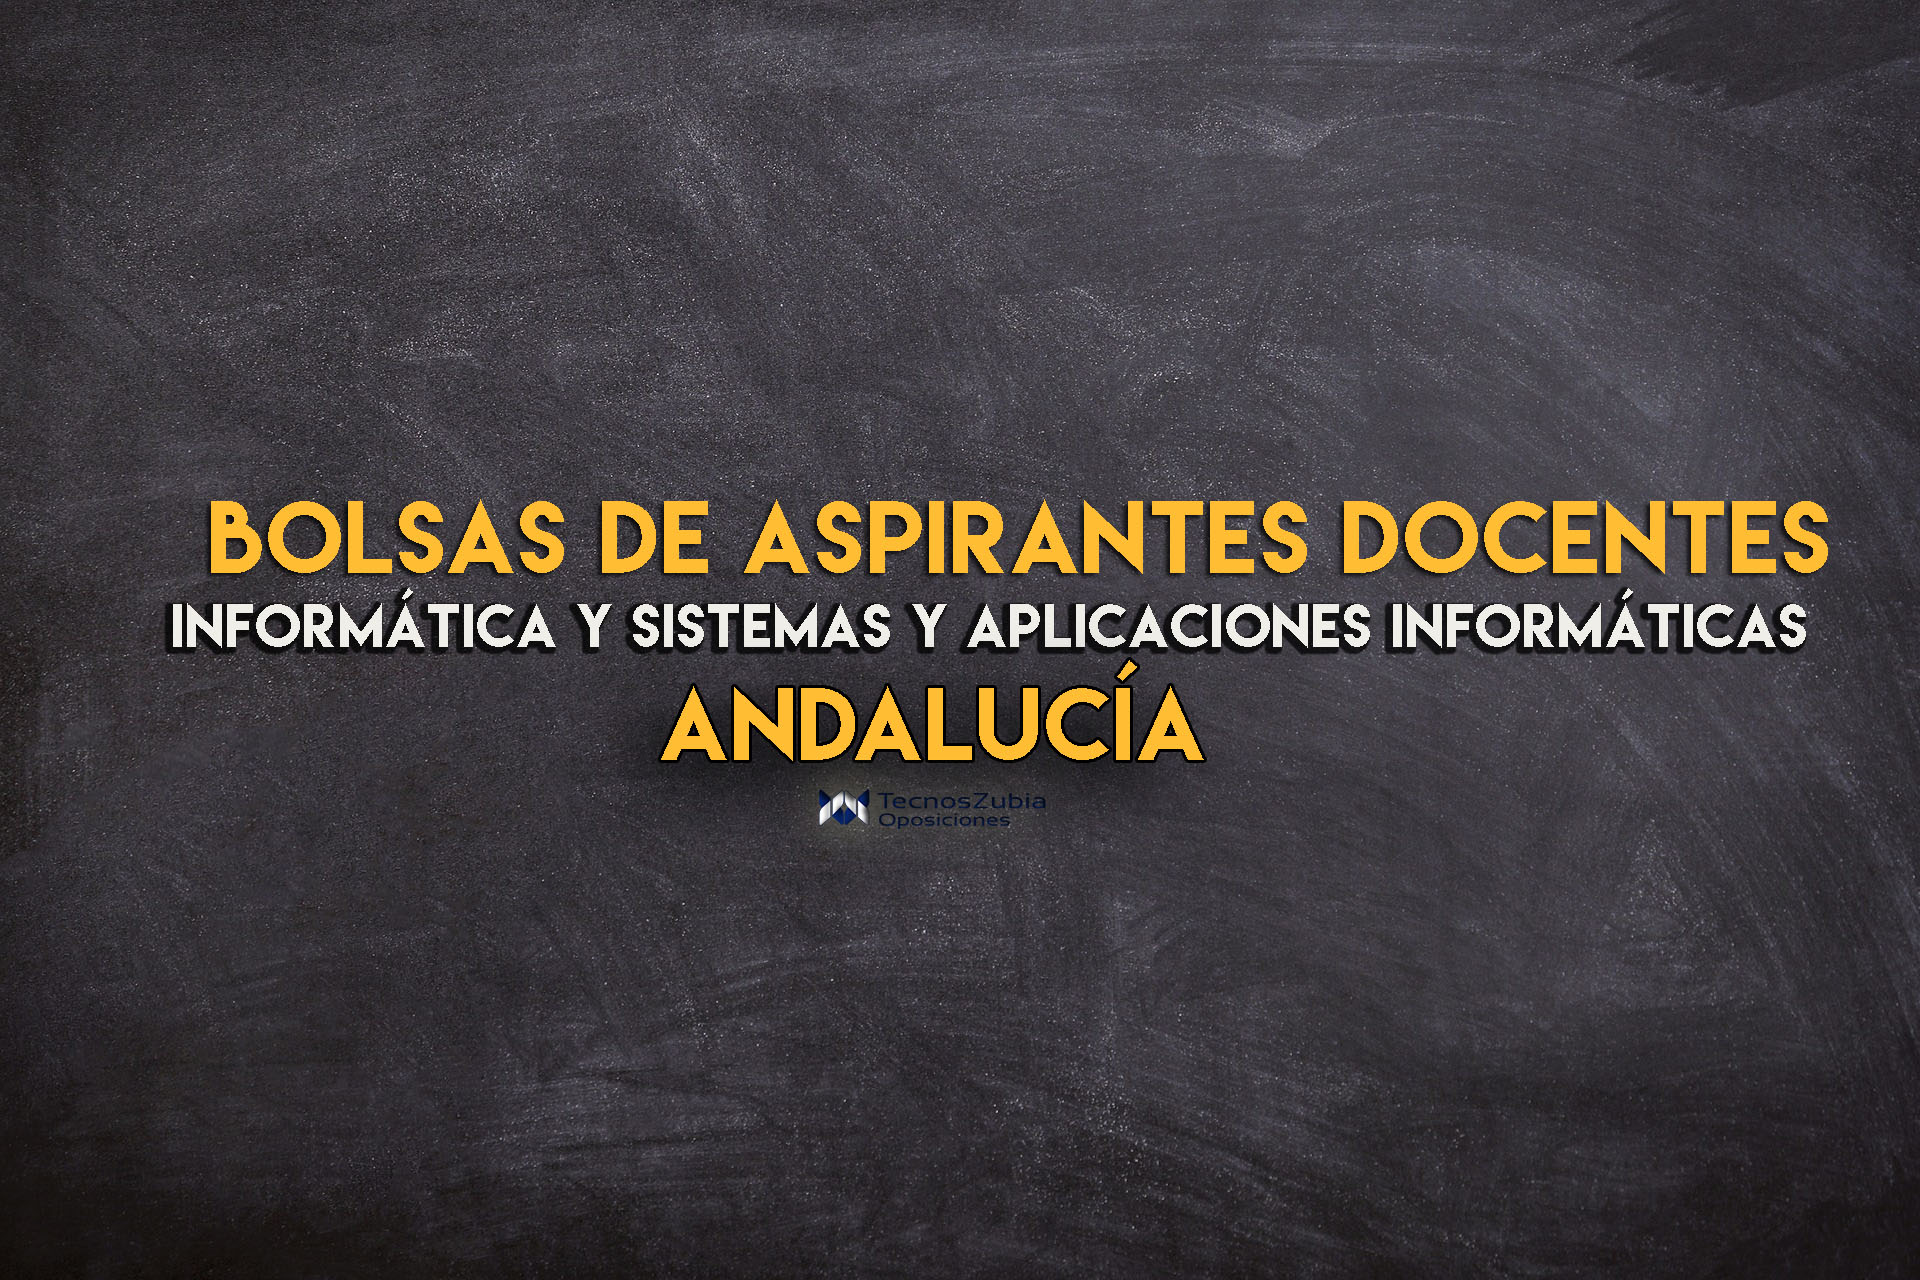 bolsas de aspirantes docentes andalucia informatica